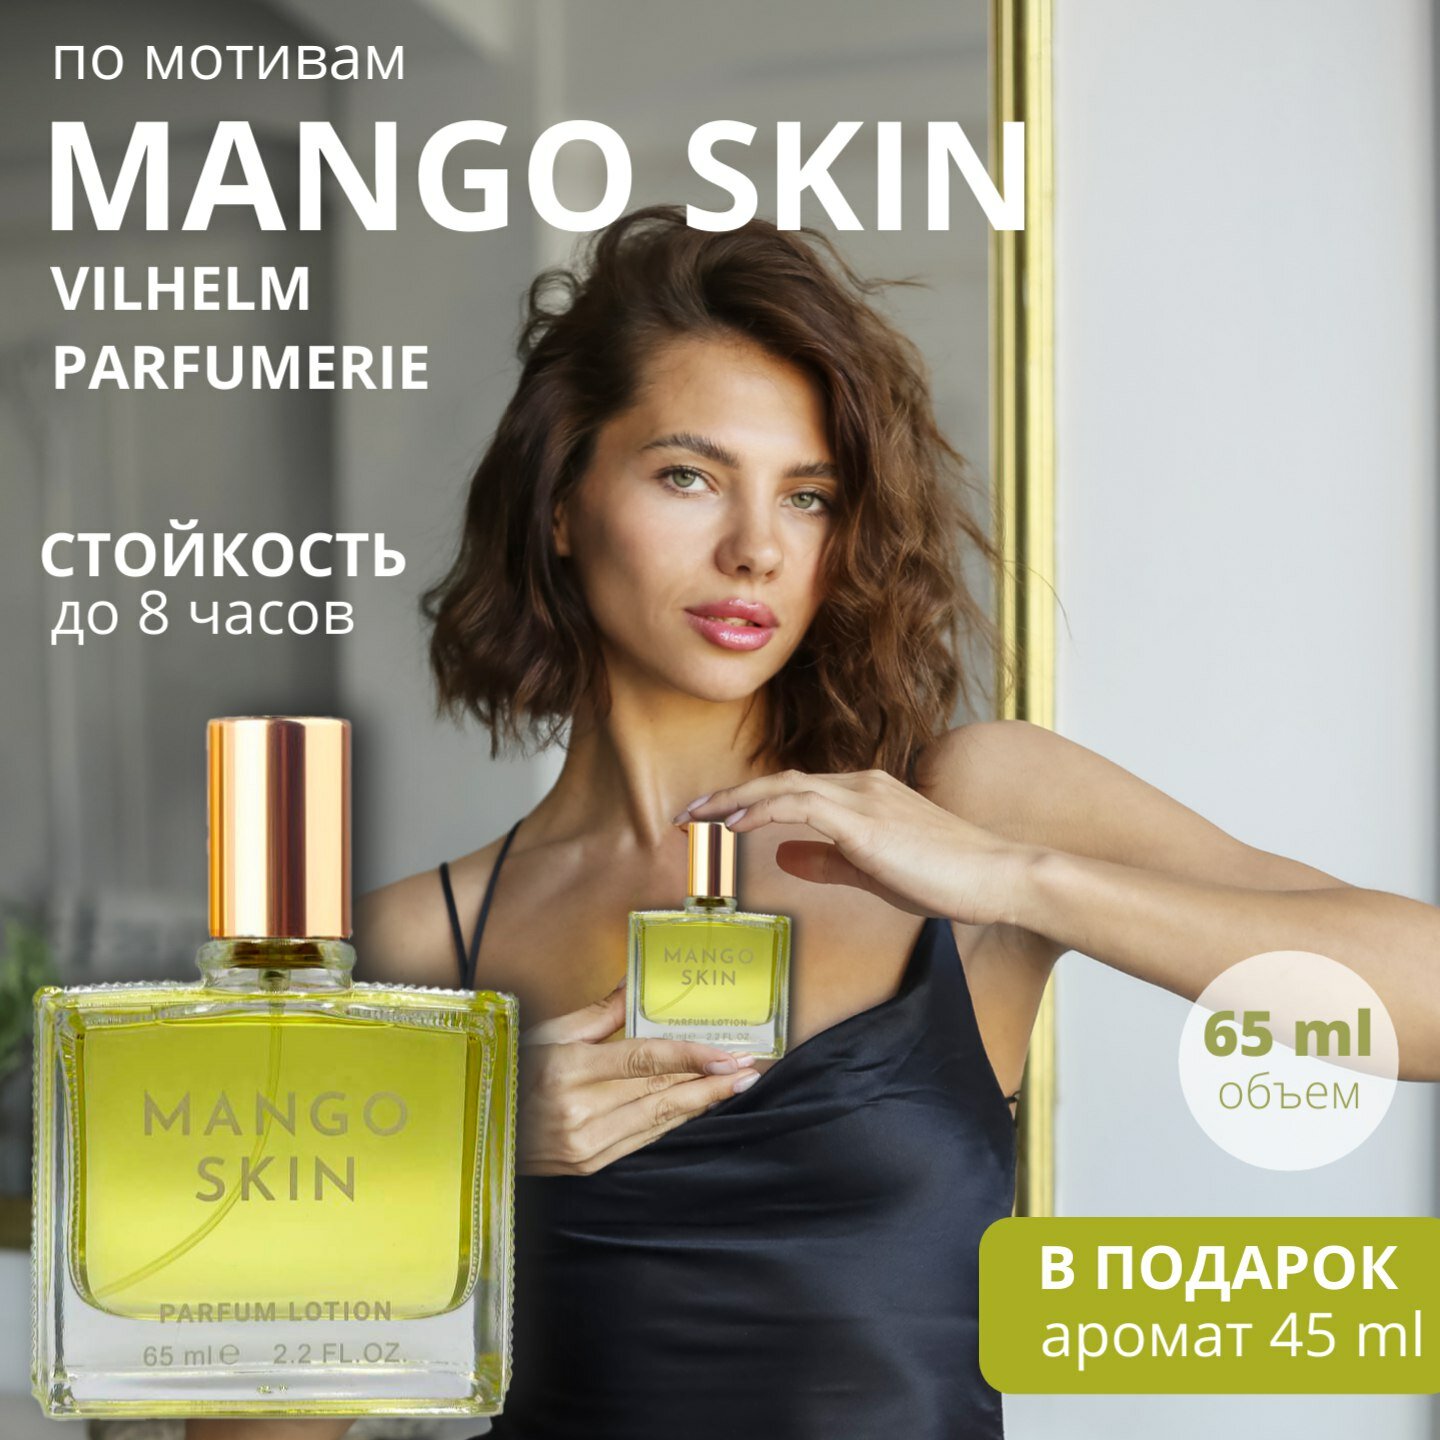 Духи Манго скин Mango Skin парфюмерная вода unisex / lotion 65 мл, L'Esprit de la France